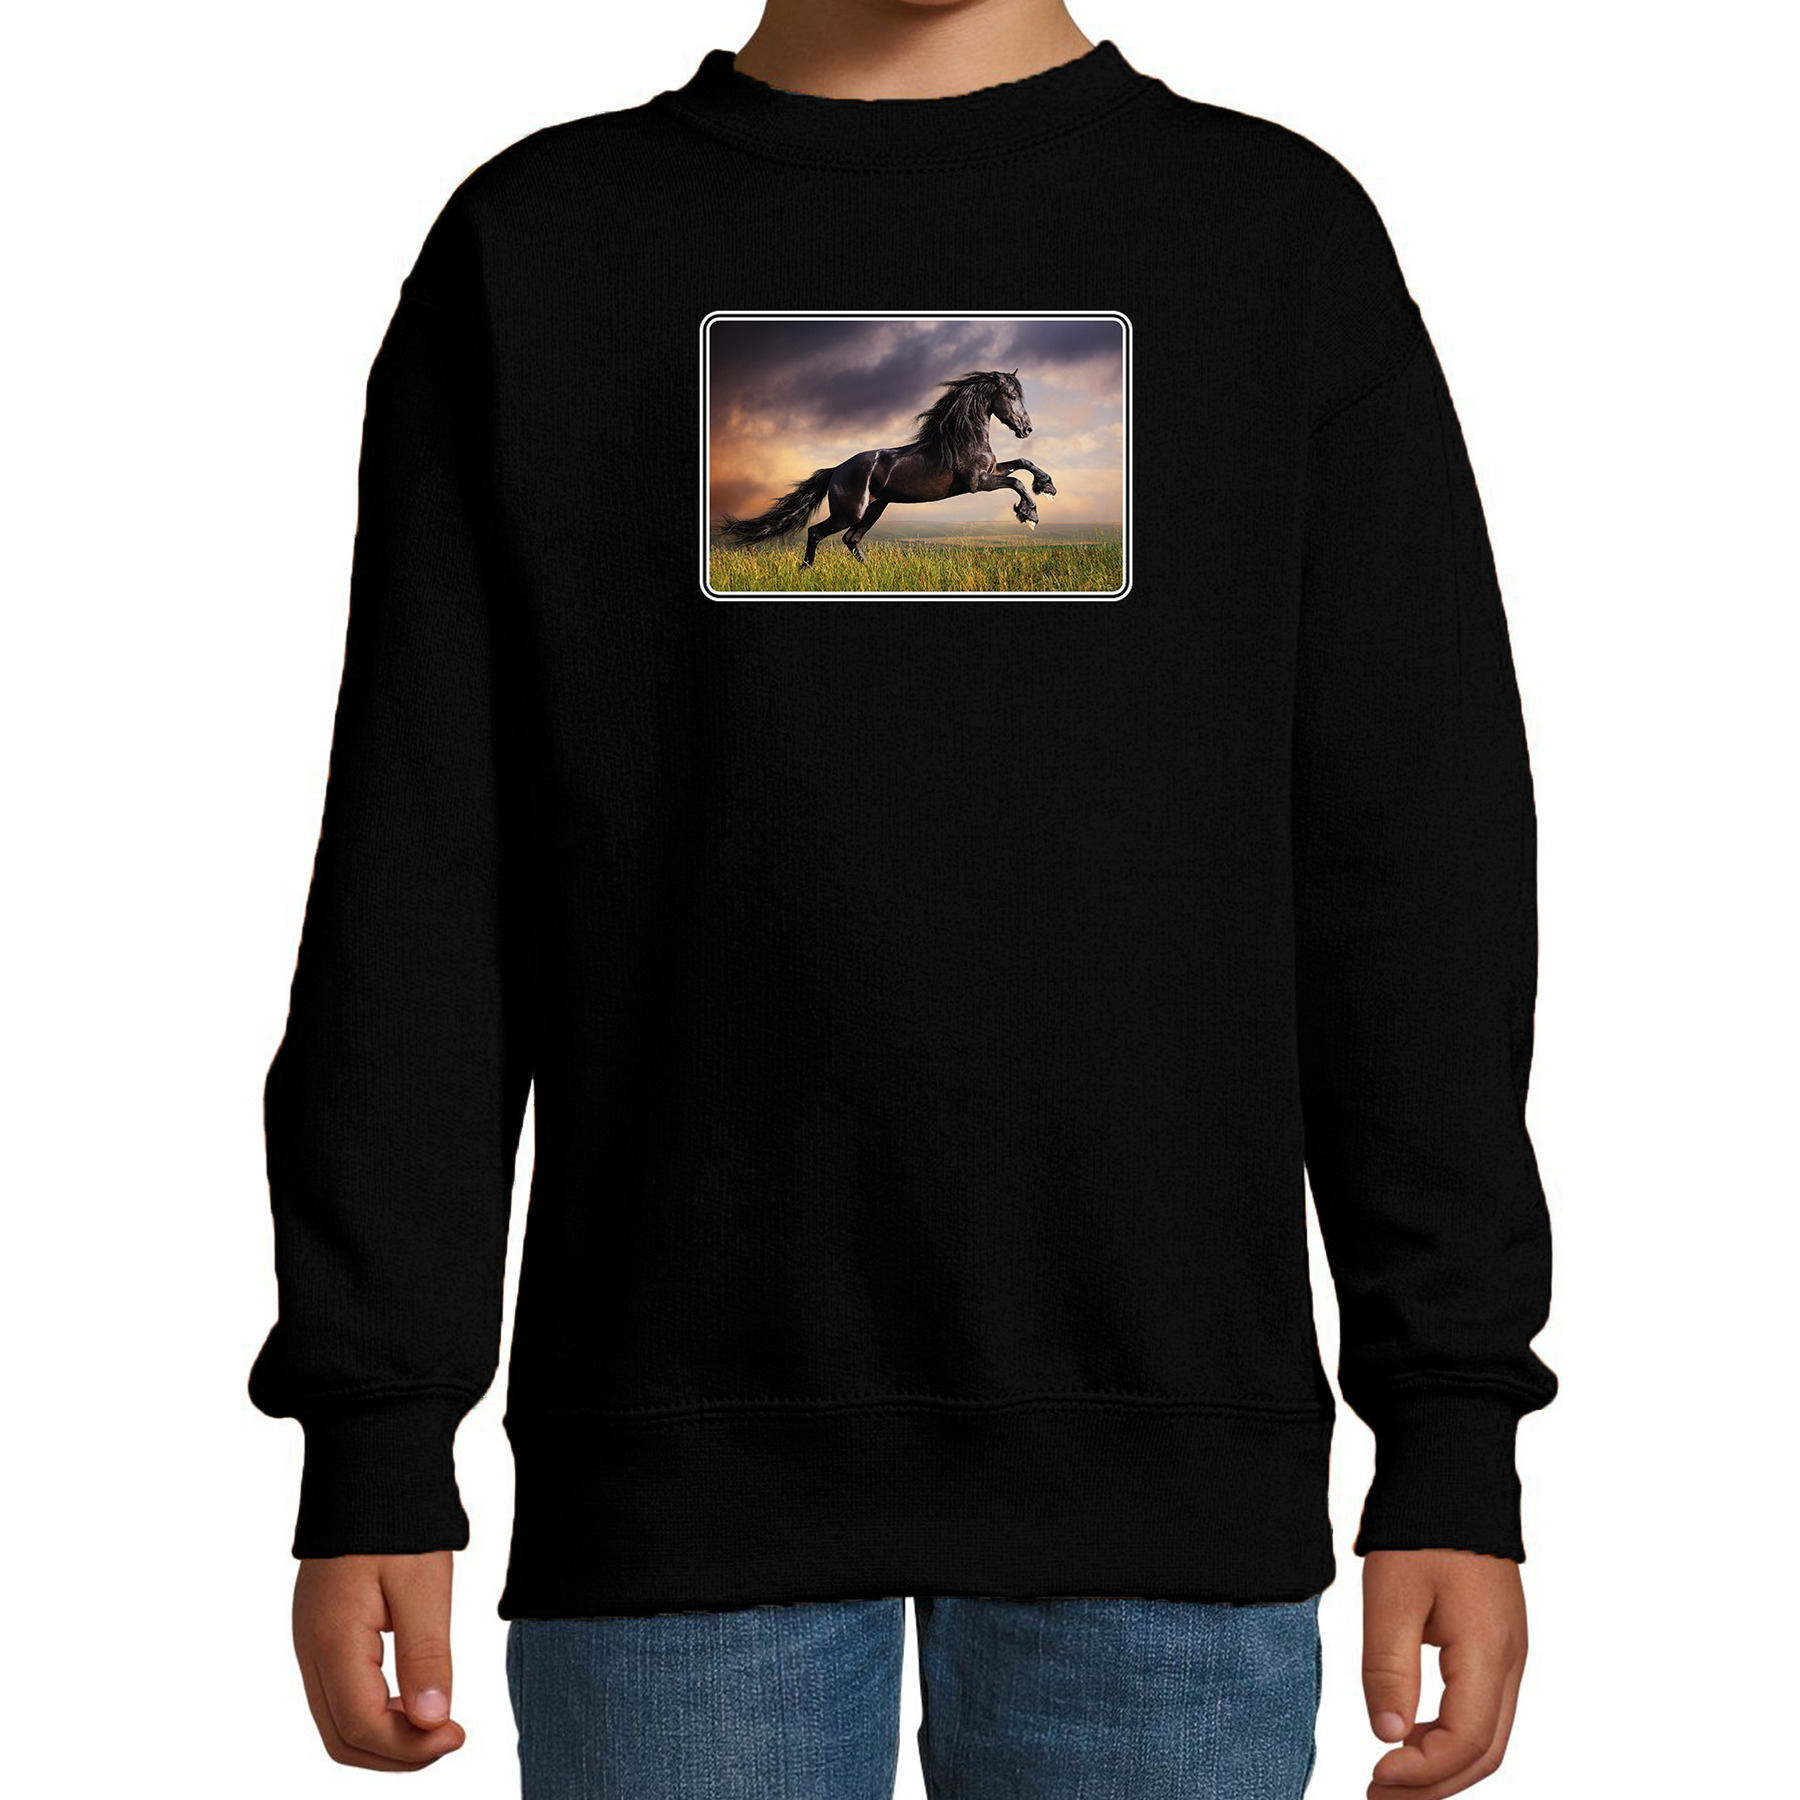 Dieren sweater-trui met paarden foto zwart voor kinderen